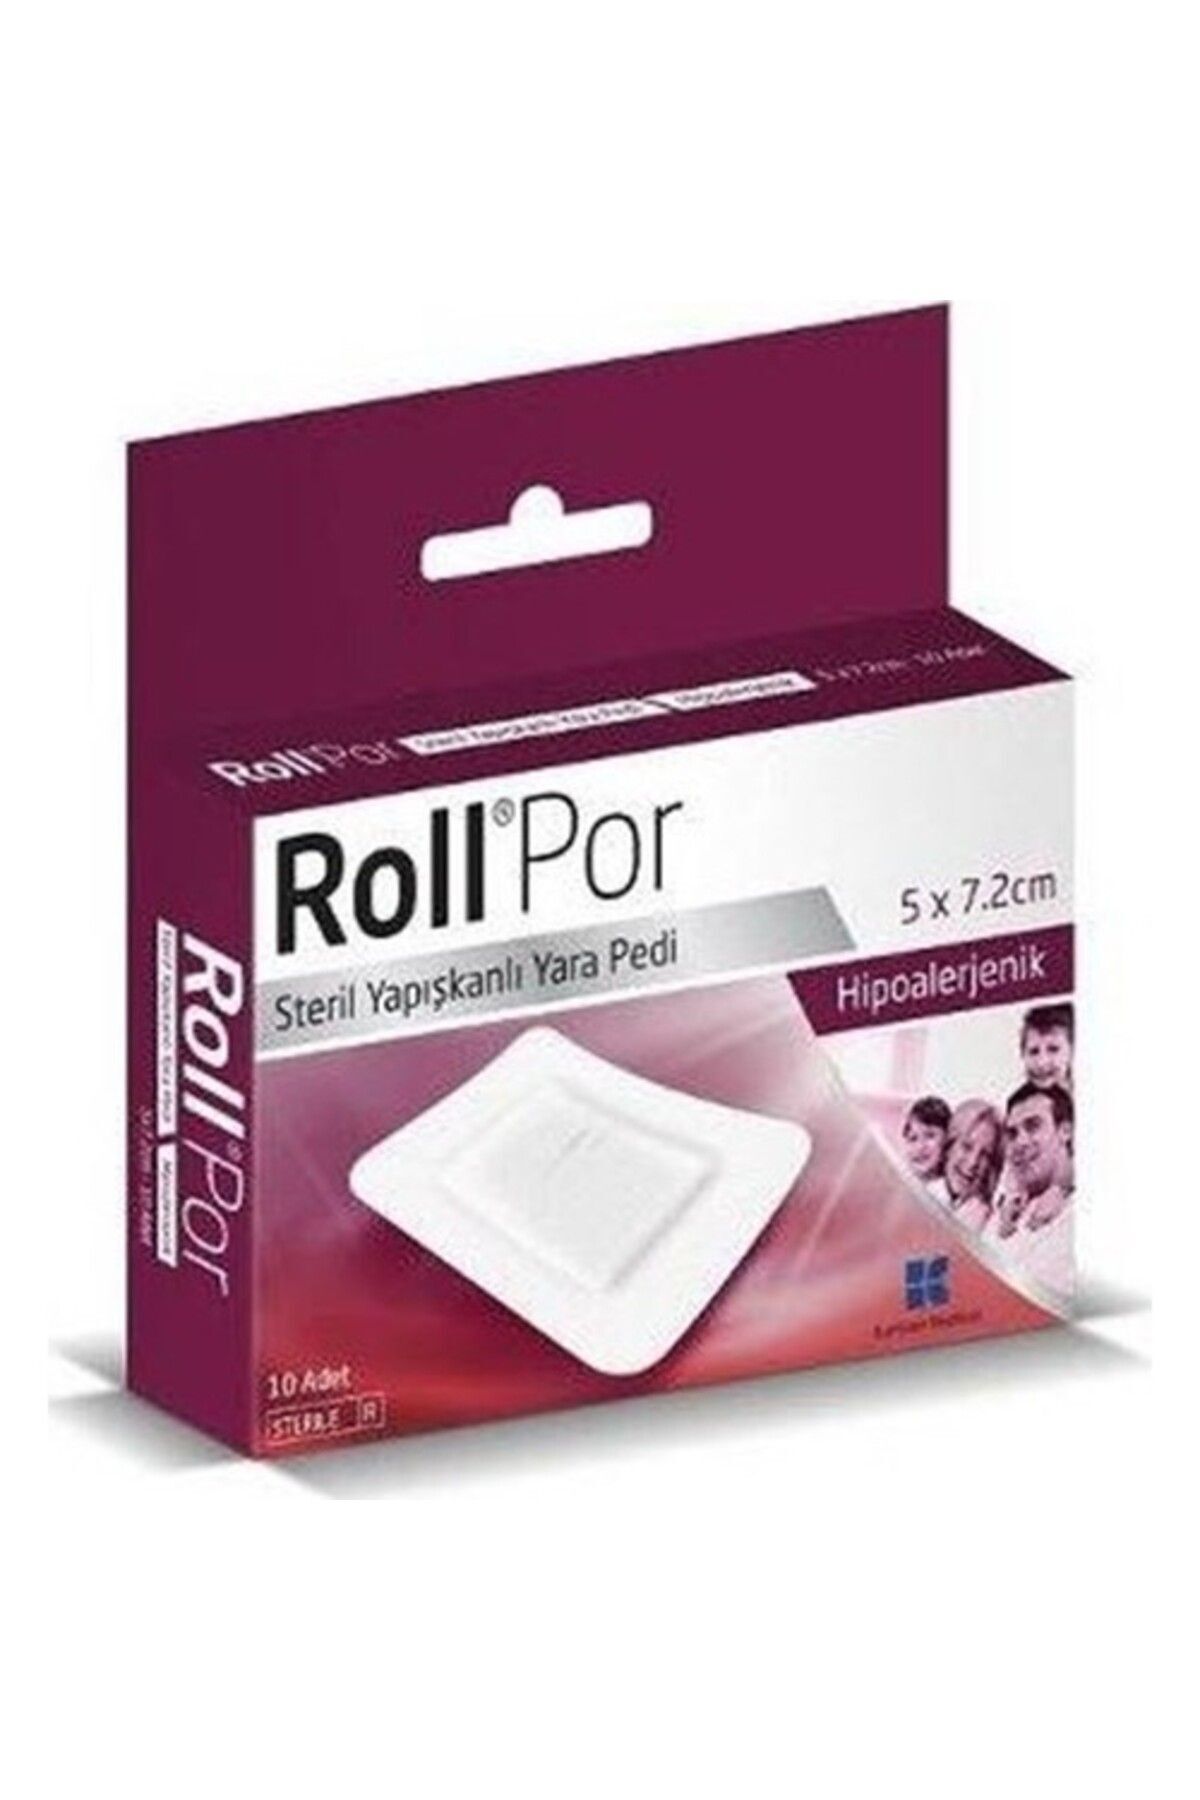 Roll Por Hipoalerjenik Steril Yapışknlı Yara Pedi 5x7,2 Cm 10 Lu